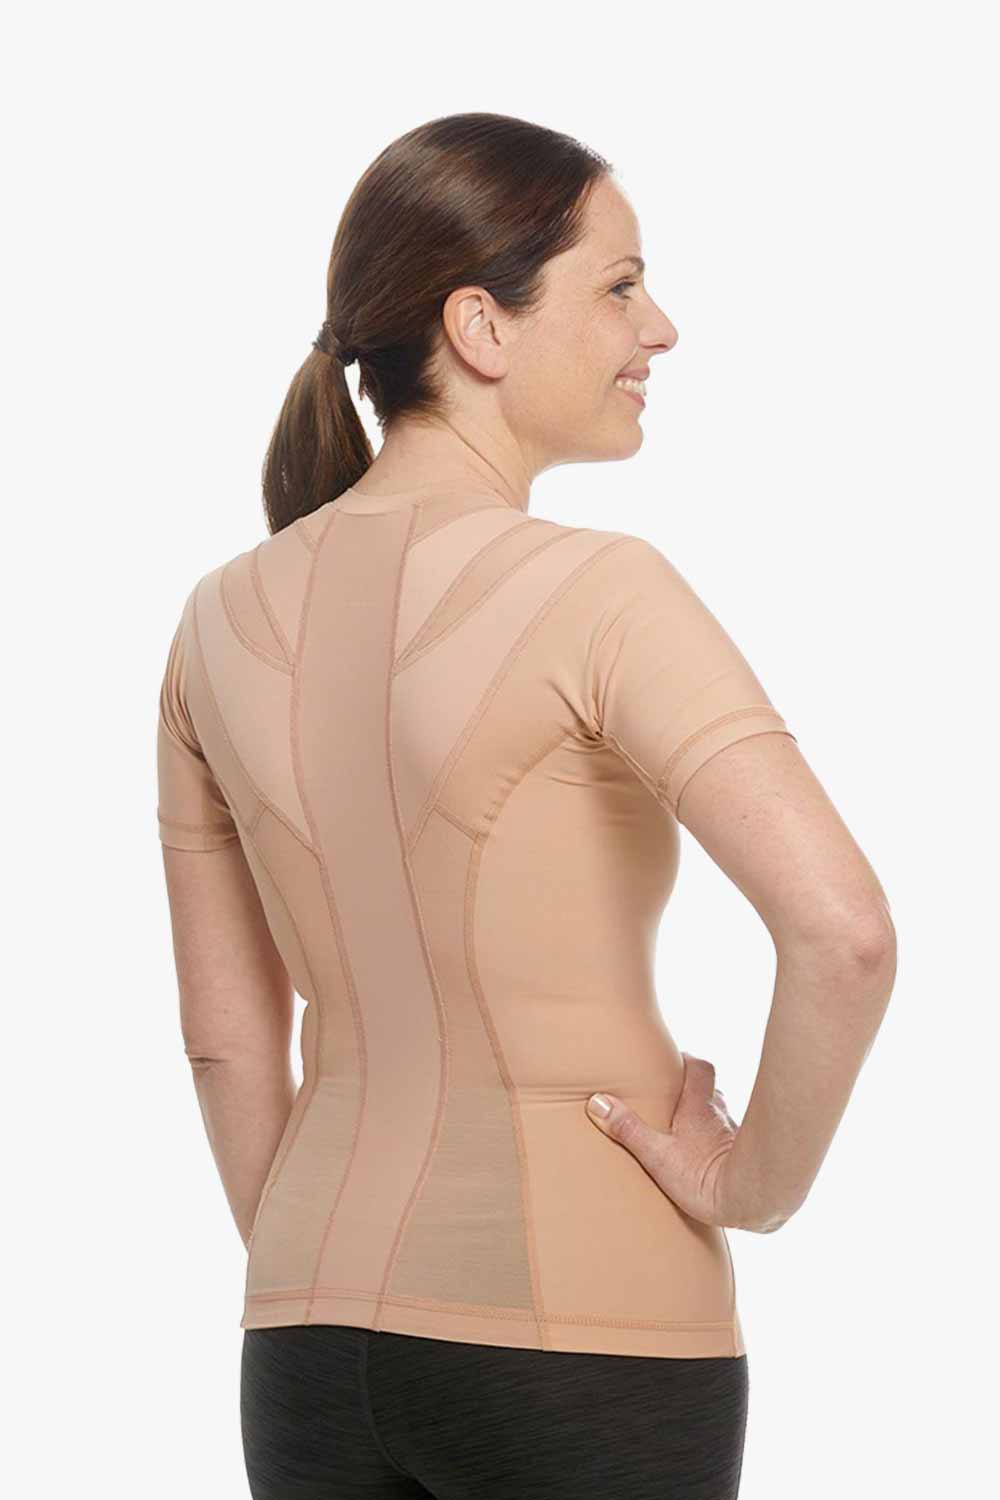 Women's Posture Shirt™ Zipper - Nude